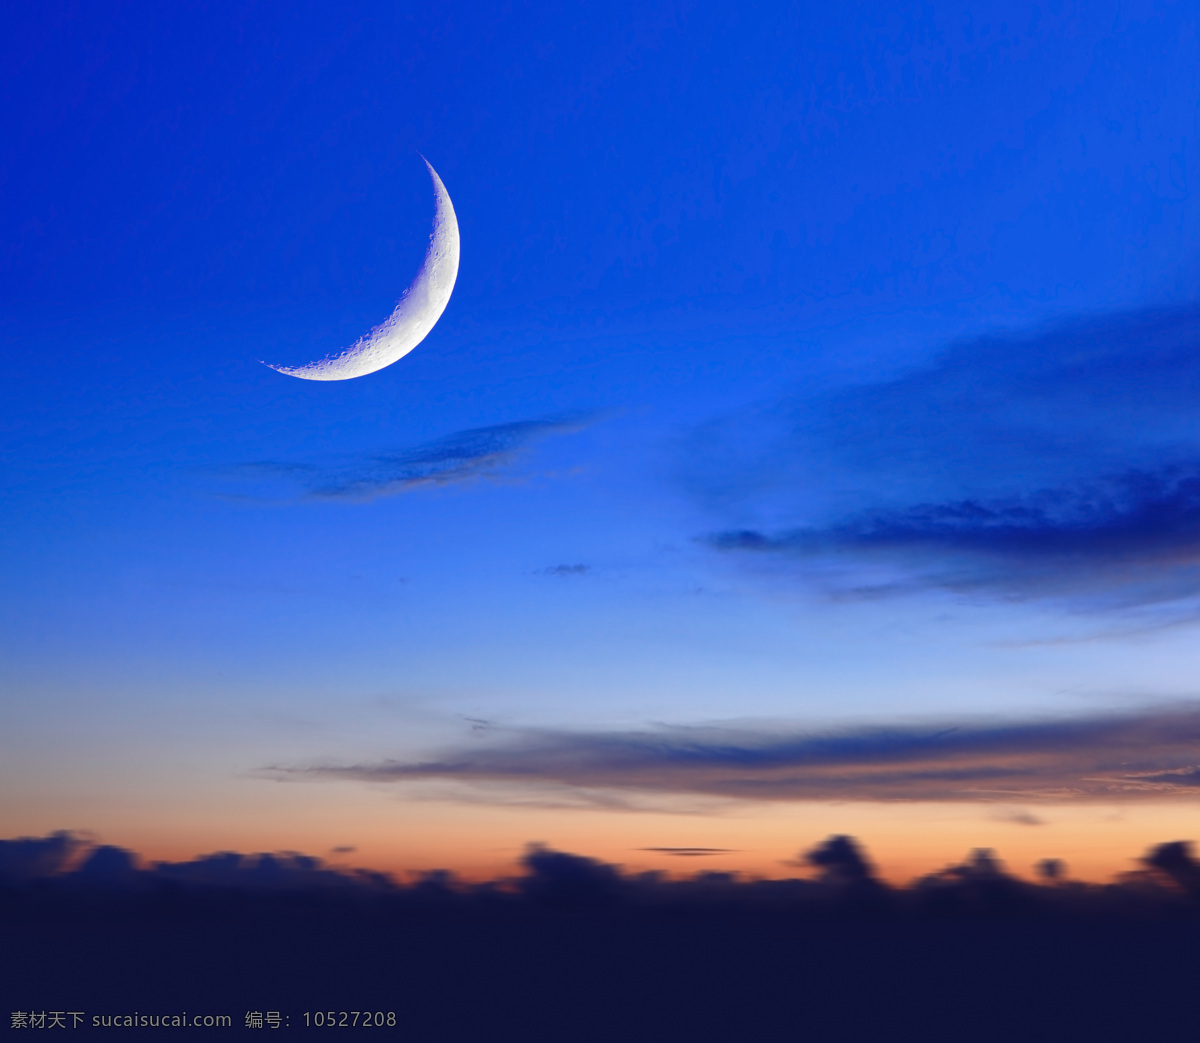 天空中的弯月 天空 蓝色天空 夜景 自然景观 月色 月亮 月亮摄影 月亮素材 弯月 自然风景